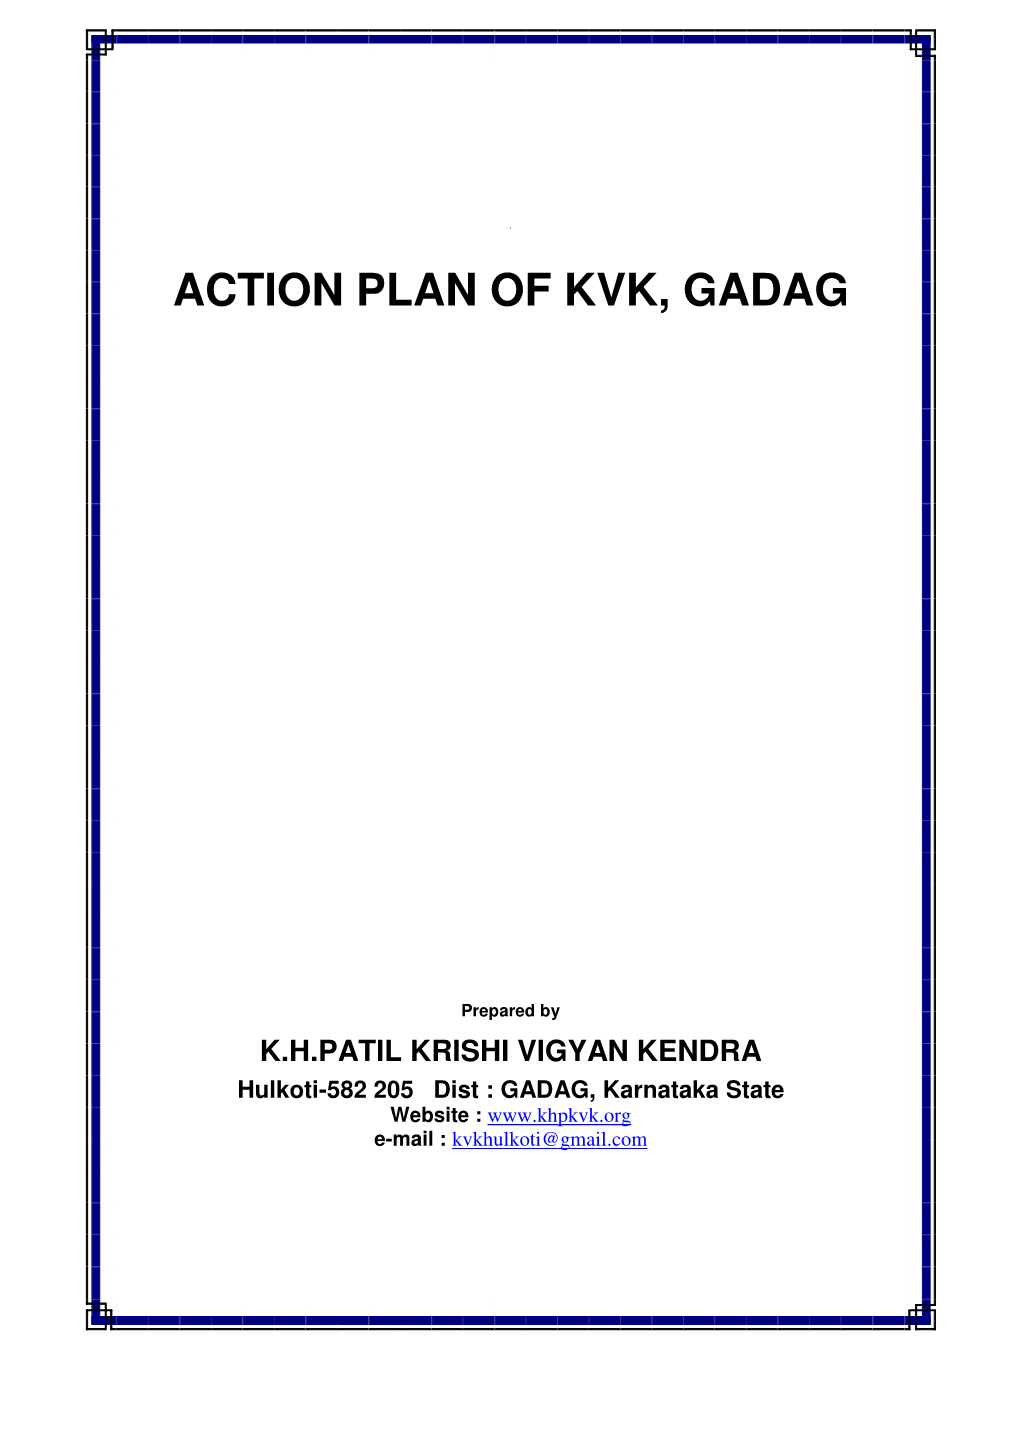 Action Plan of Kvk, Gadag